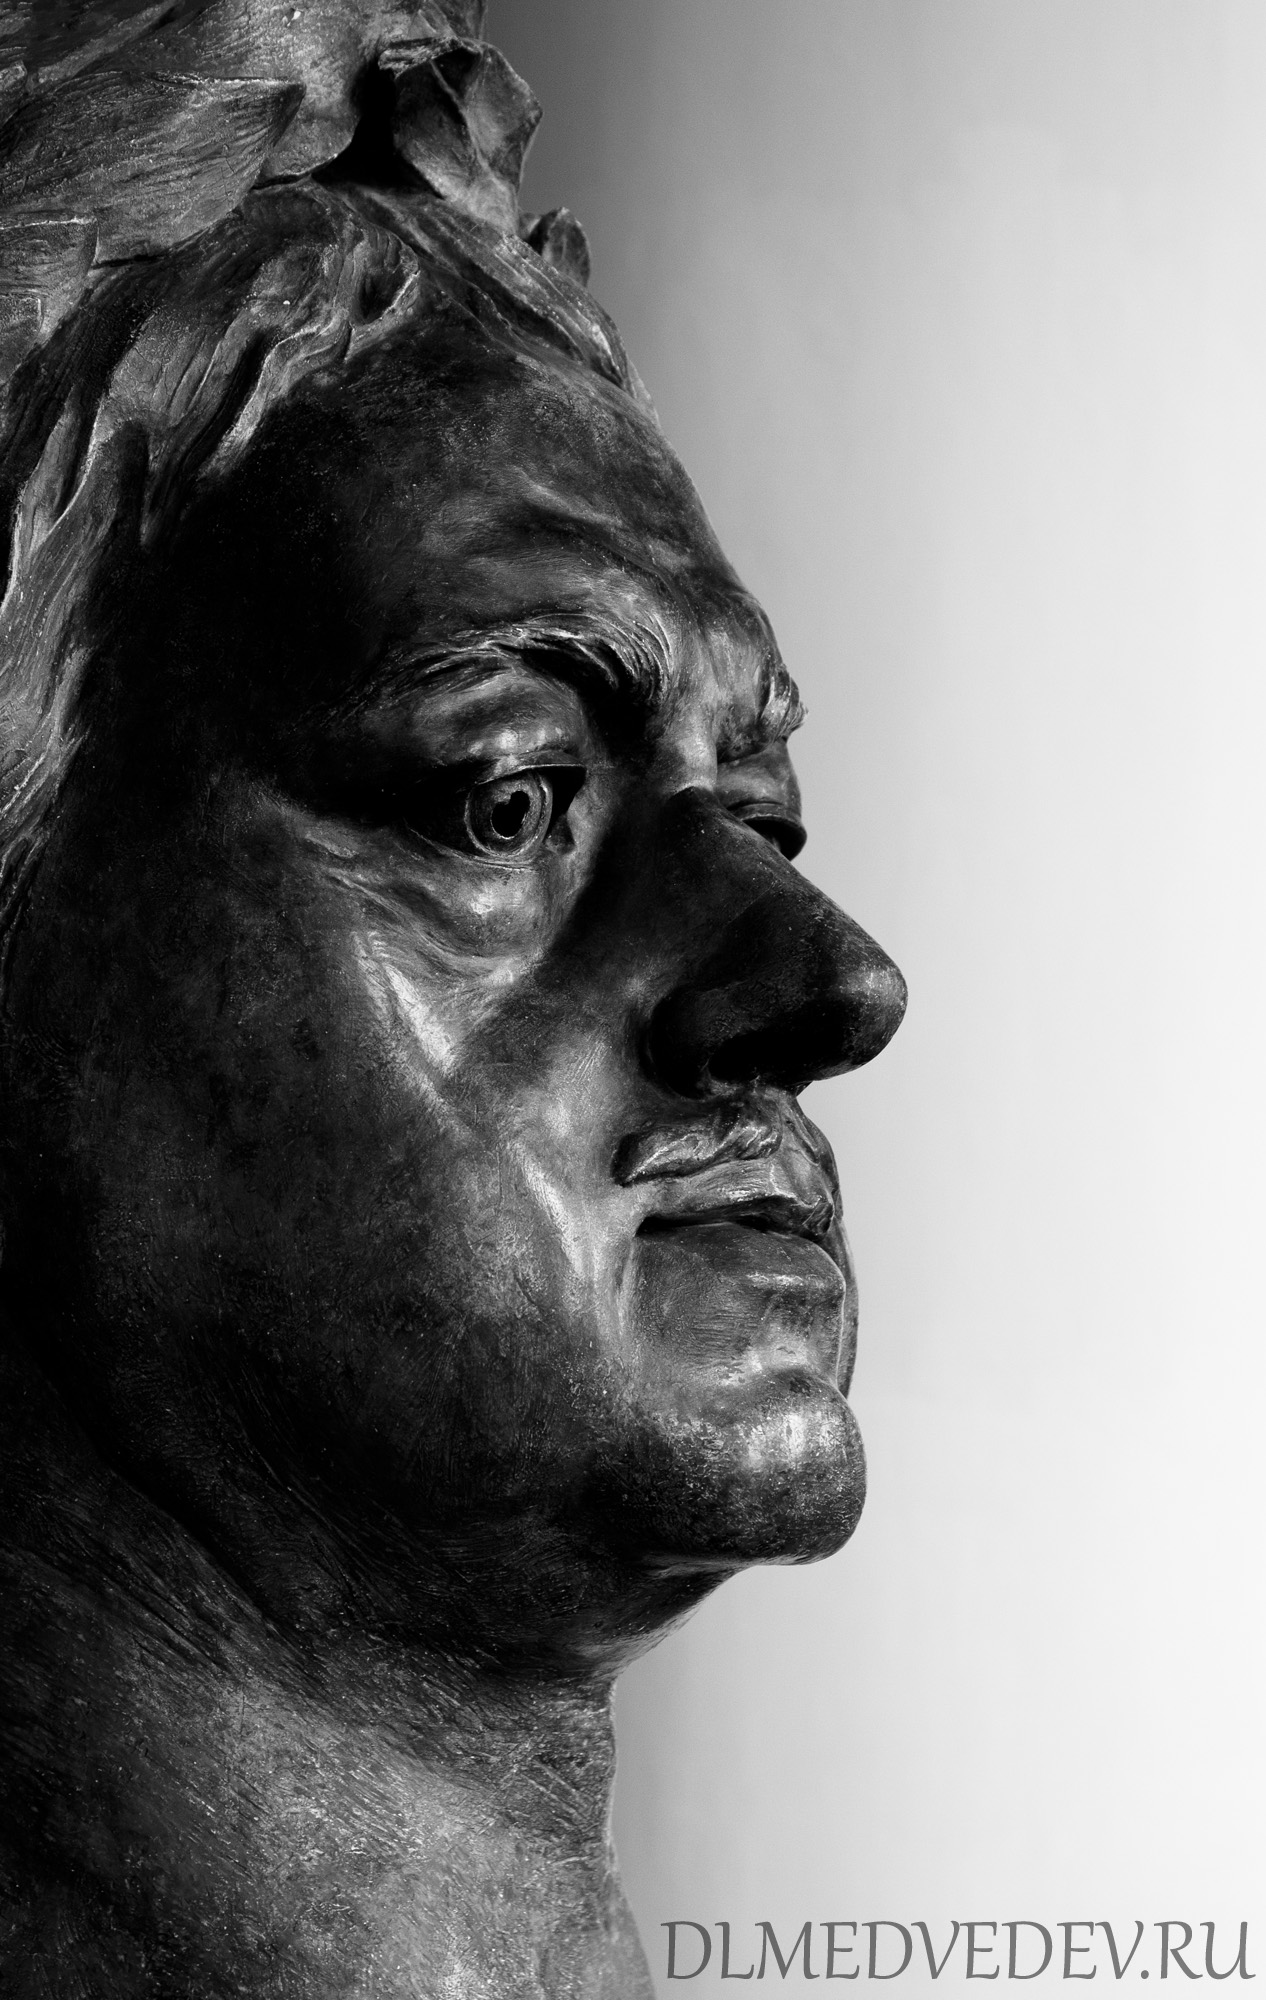 Голова Петра I из скульптуры Медный всадник работы Мари-Анны Колло